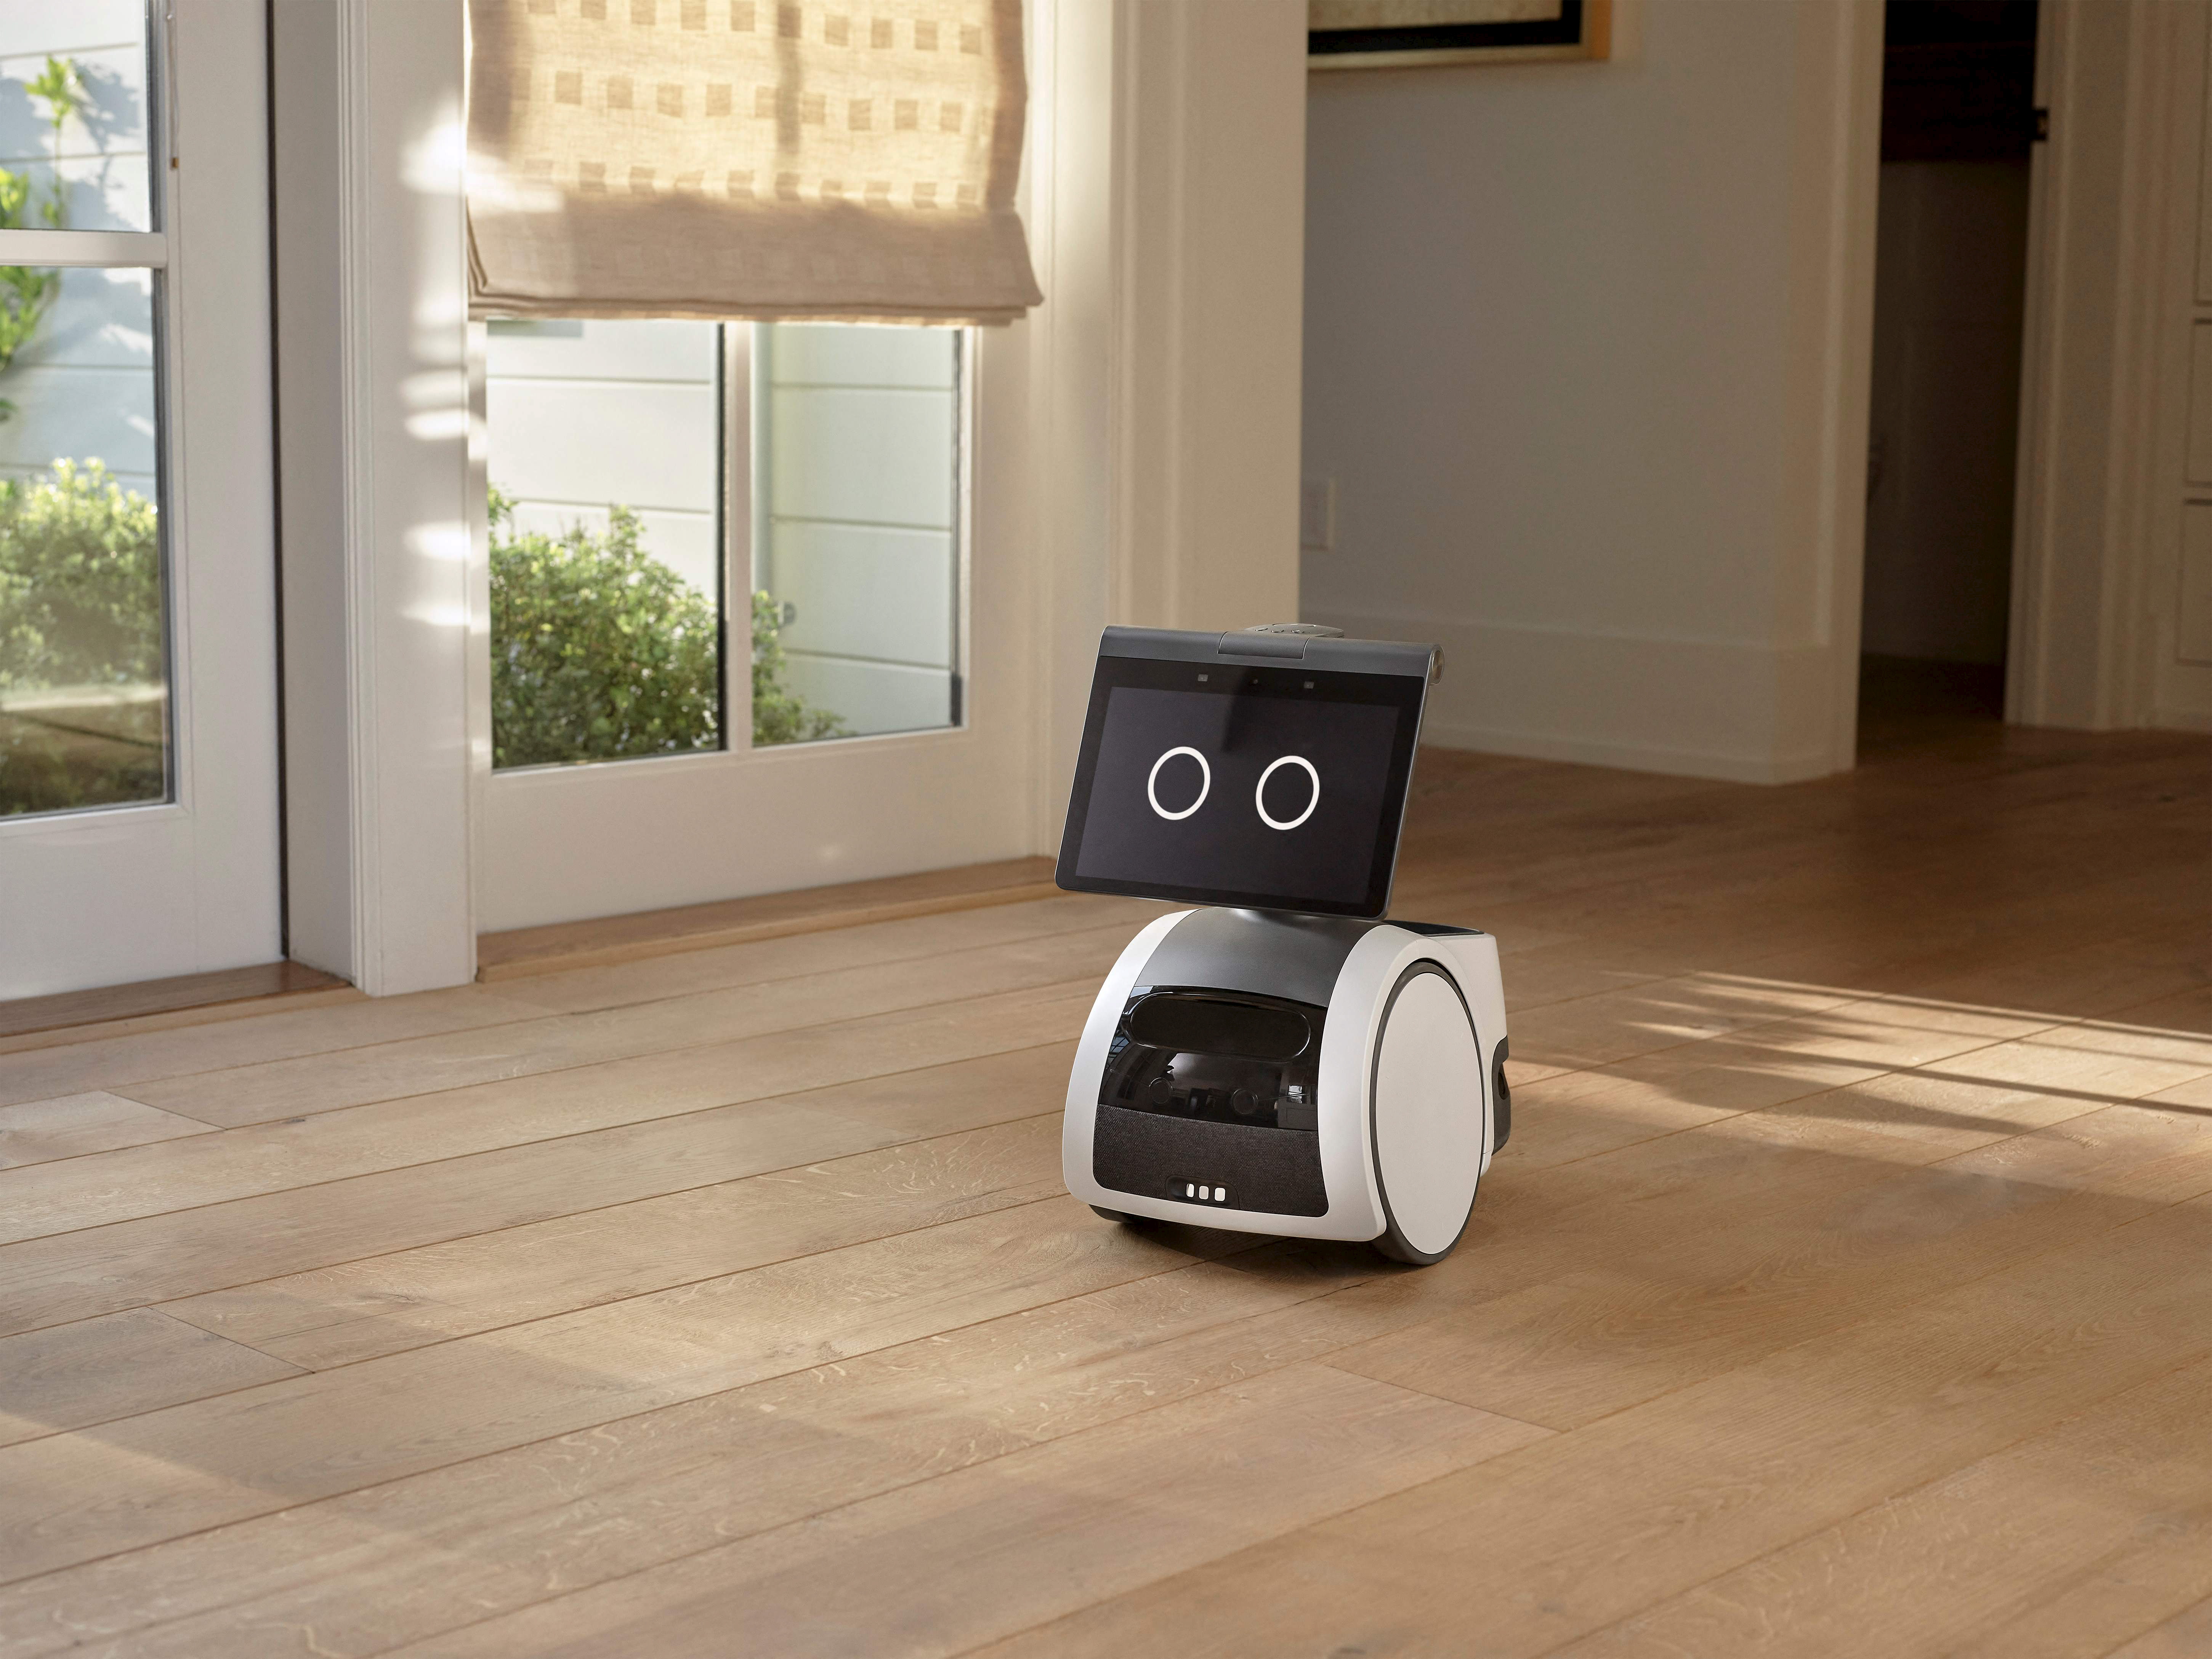 Banc d'essai : un robot laveur de plancher et des caméras intelligentes